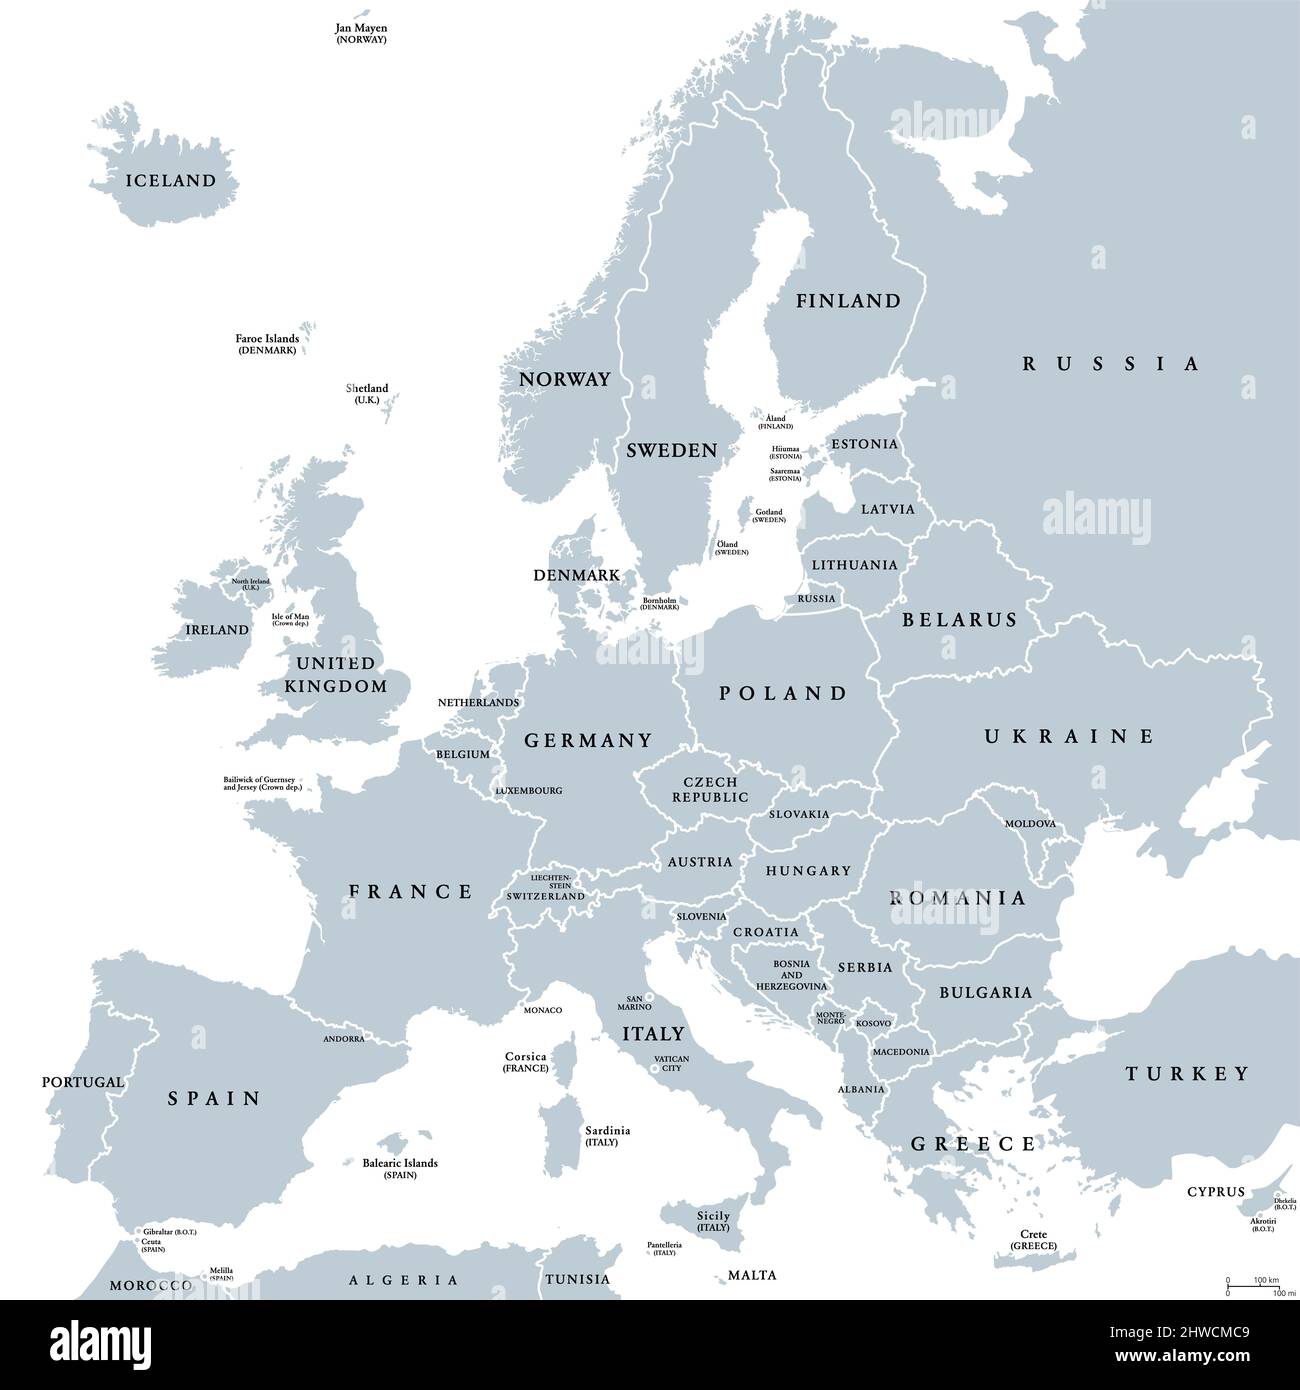 Europa, graue politische Landkarte. Kontinent und ein Teil Eurasiens, in der nördlichen HeWelt gelegen, mit etwa 50 souveränen Staaten. Stockfoto